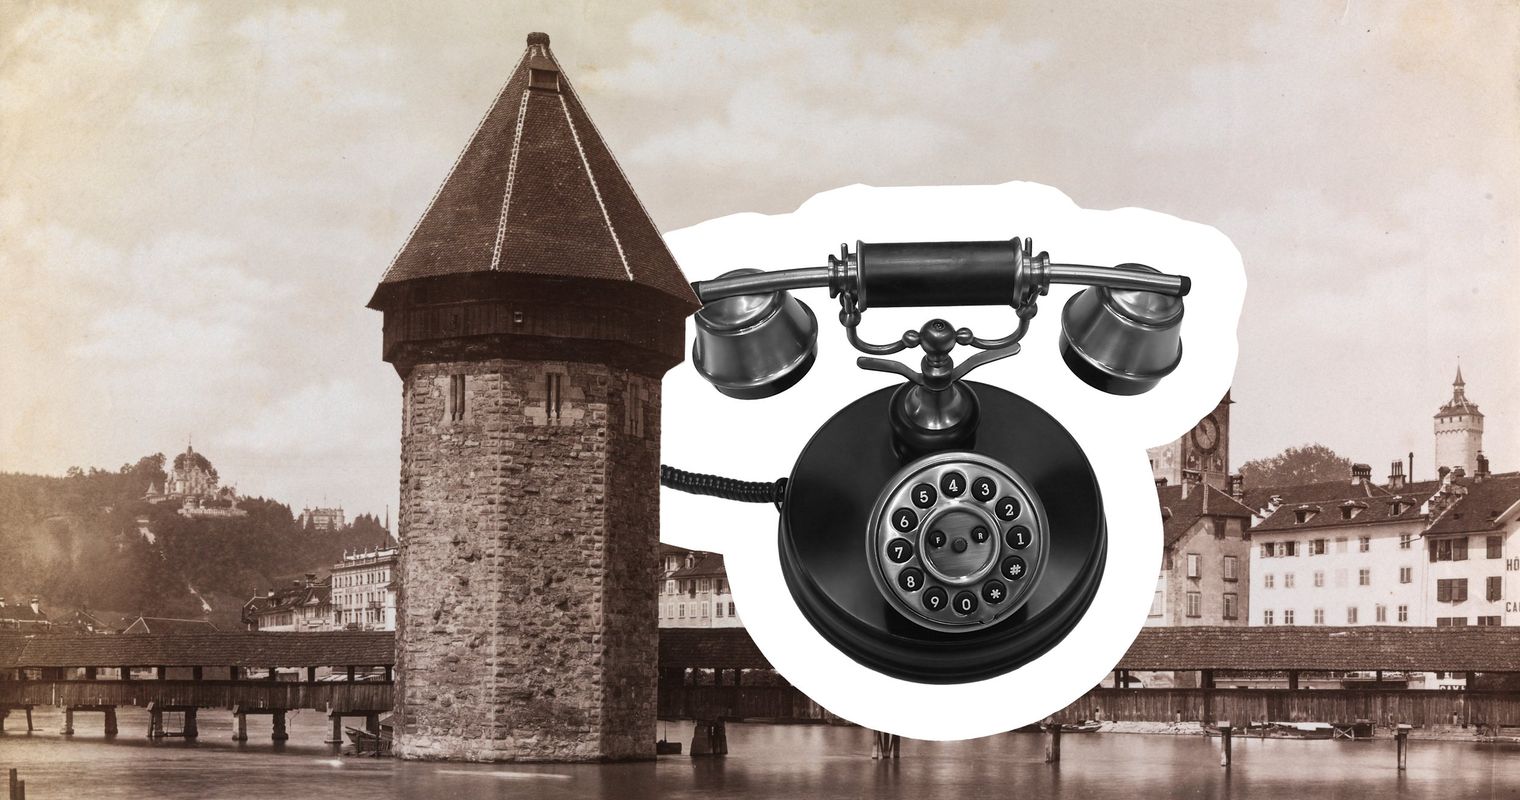 Als der Luzerner Regierungsrat sein erstes Telefon bekam